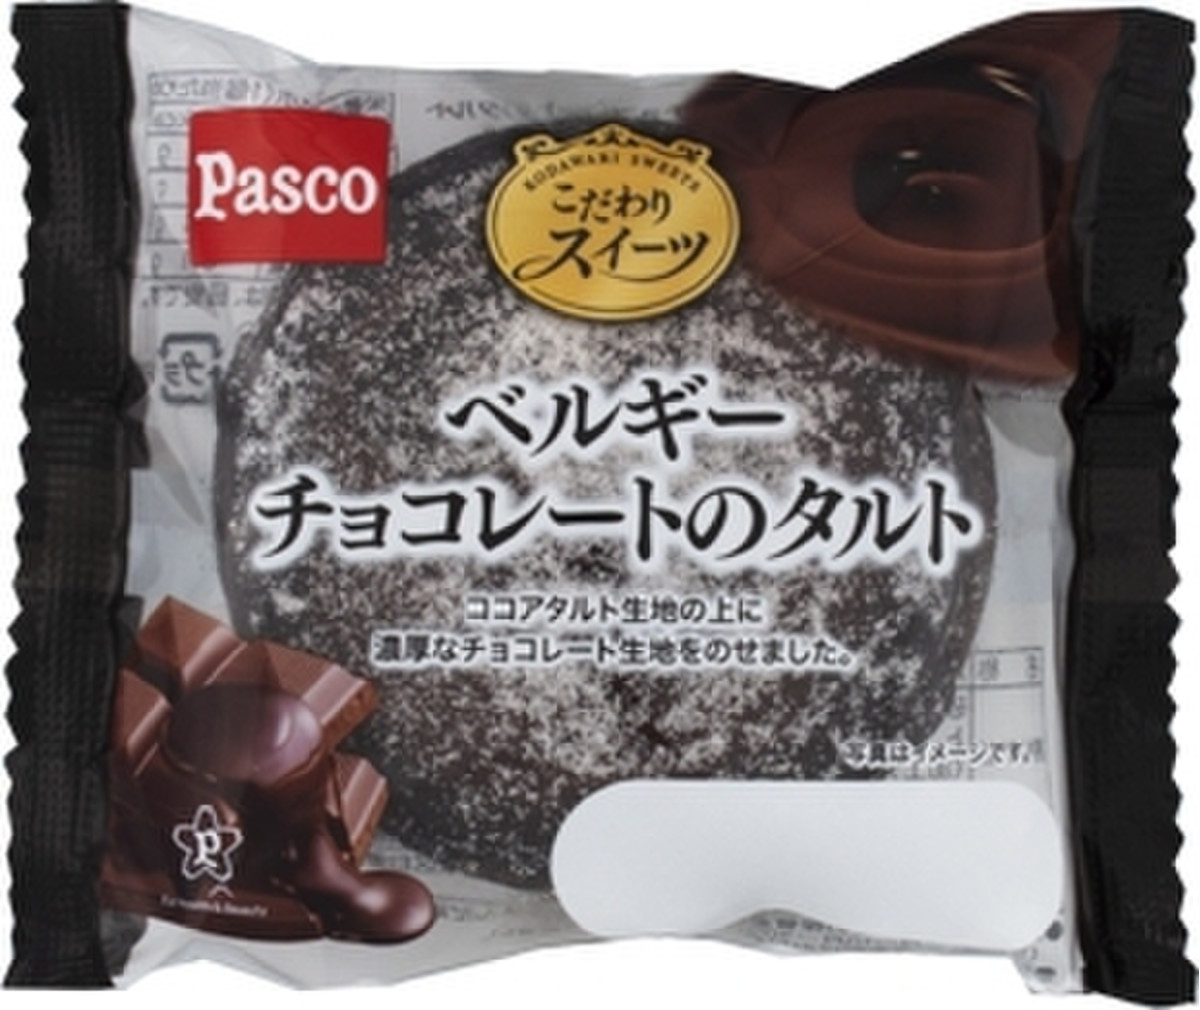 高評価 Pasco ベルギーチョコレートのタルト 袋1個のクチコミ 評価 カロリー情報 もぐナビ